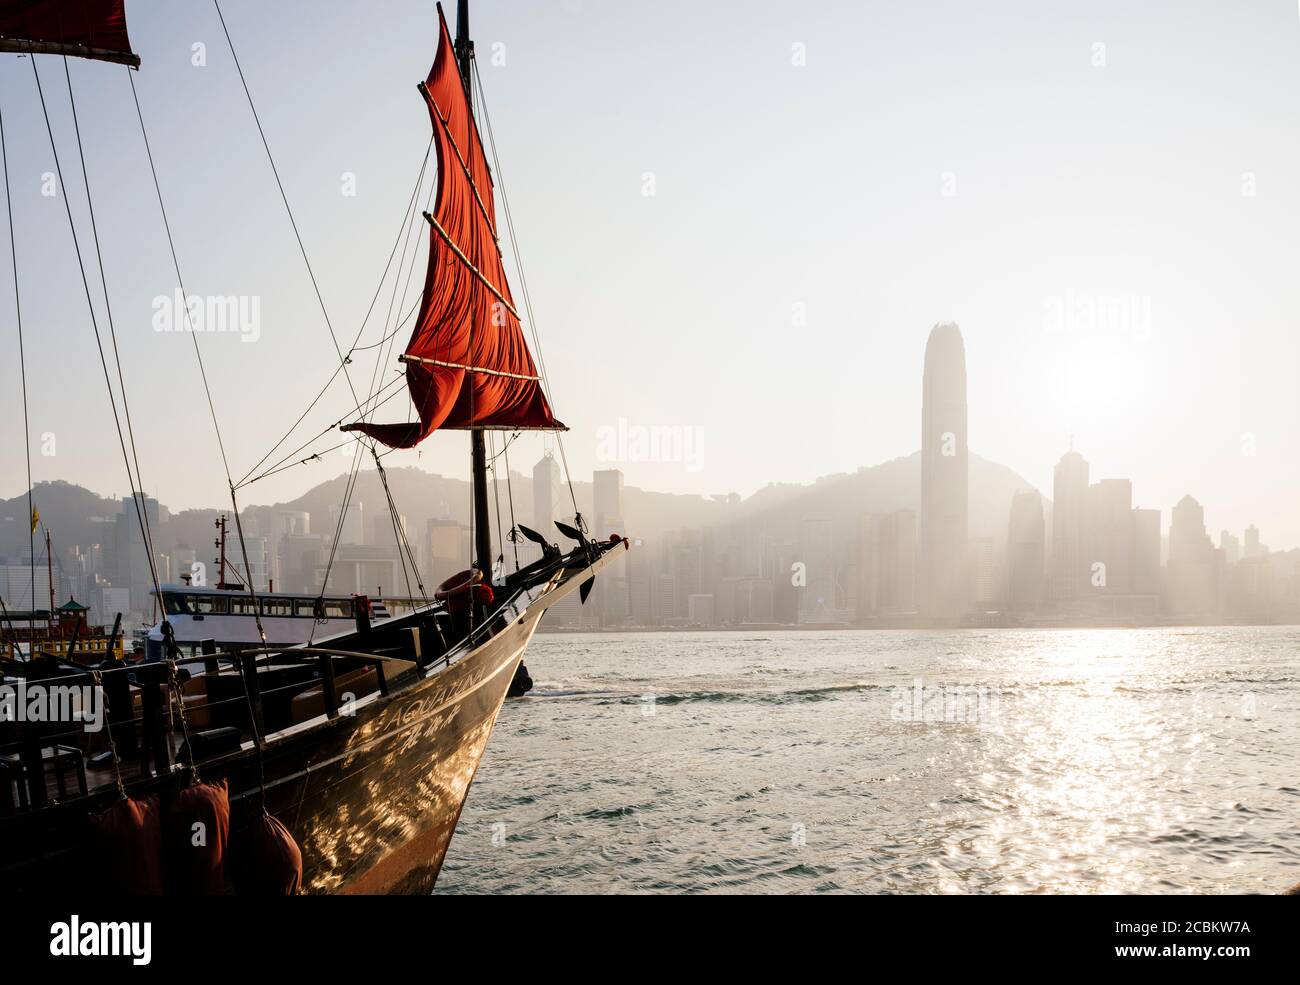 Traditionelle chinesische Junk-Segeln in Hong Kong Hafen, Hong Kong